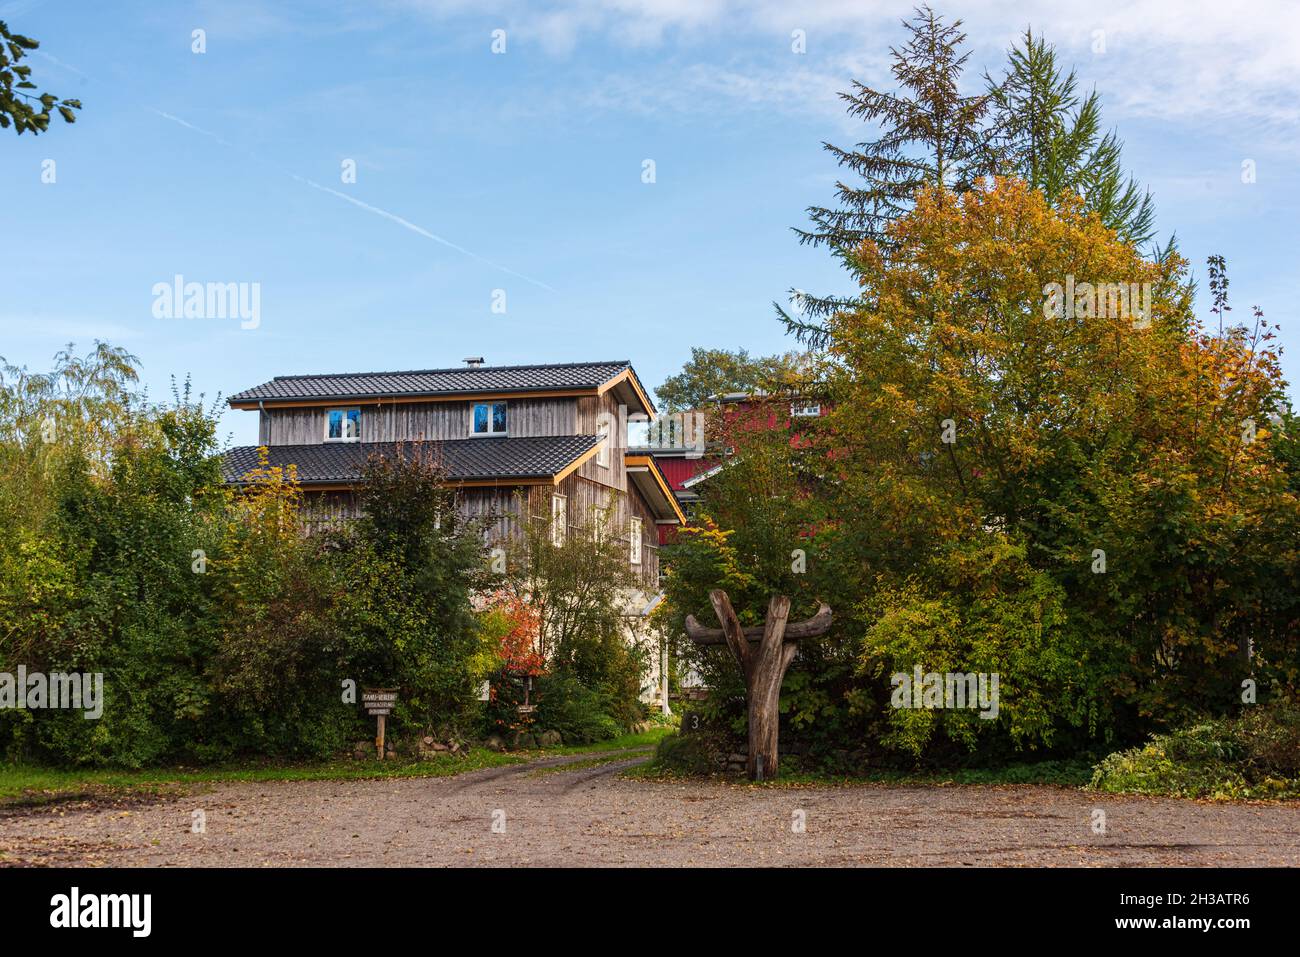 Hölzernes Wohnhaus mit Kanuverleih an der Eider in Schleswig-Holstein Foto Stock